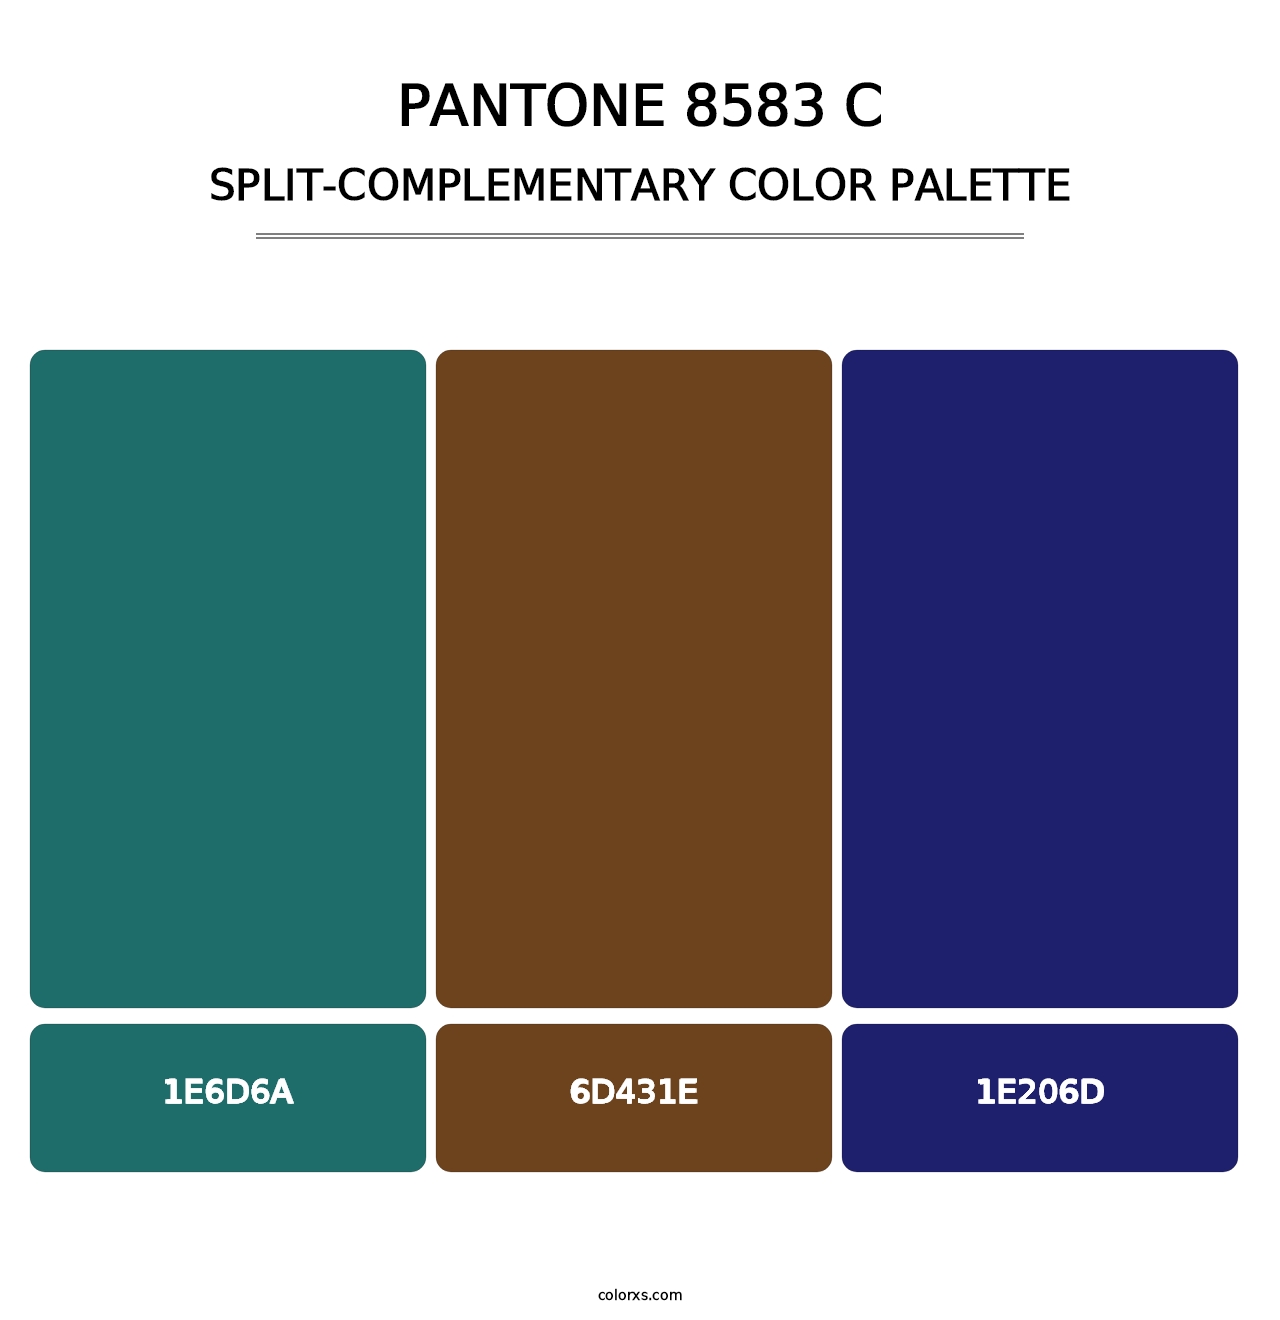 PANTONE 8583 C - Split-Complementary Color Palette